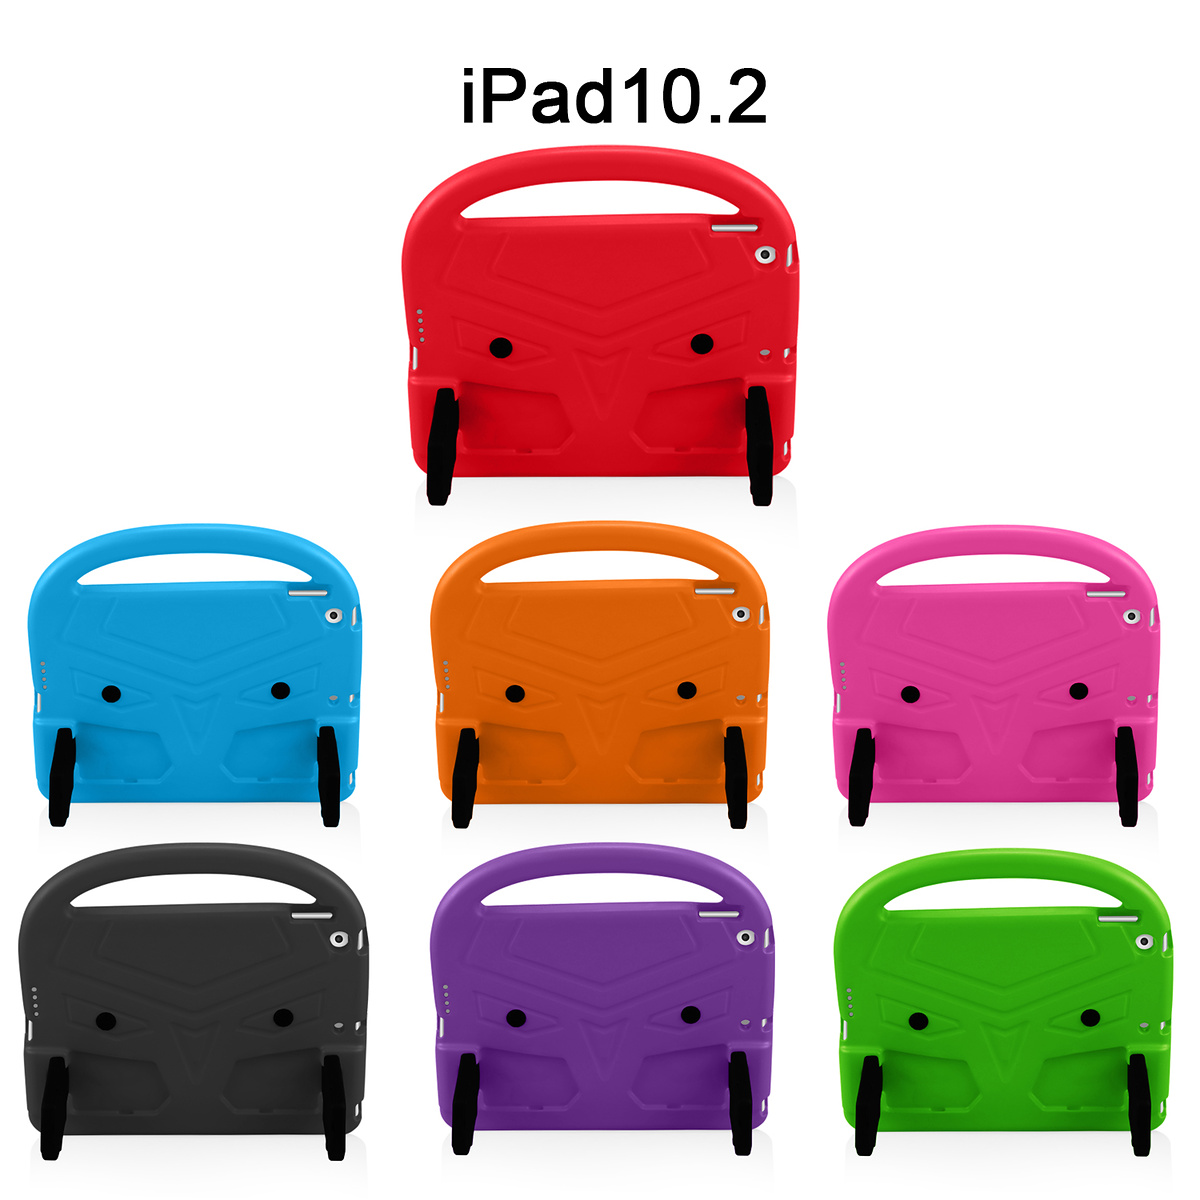 Barnfodral med ställ, iPad 10.2 / Pro 10.5 / Air 3, lila